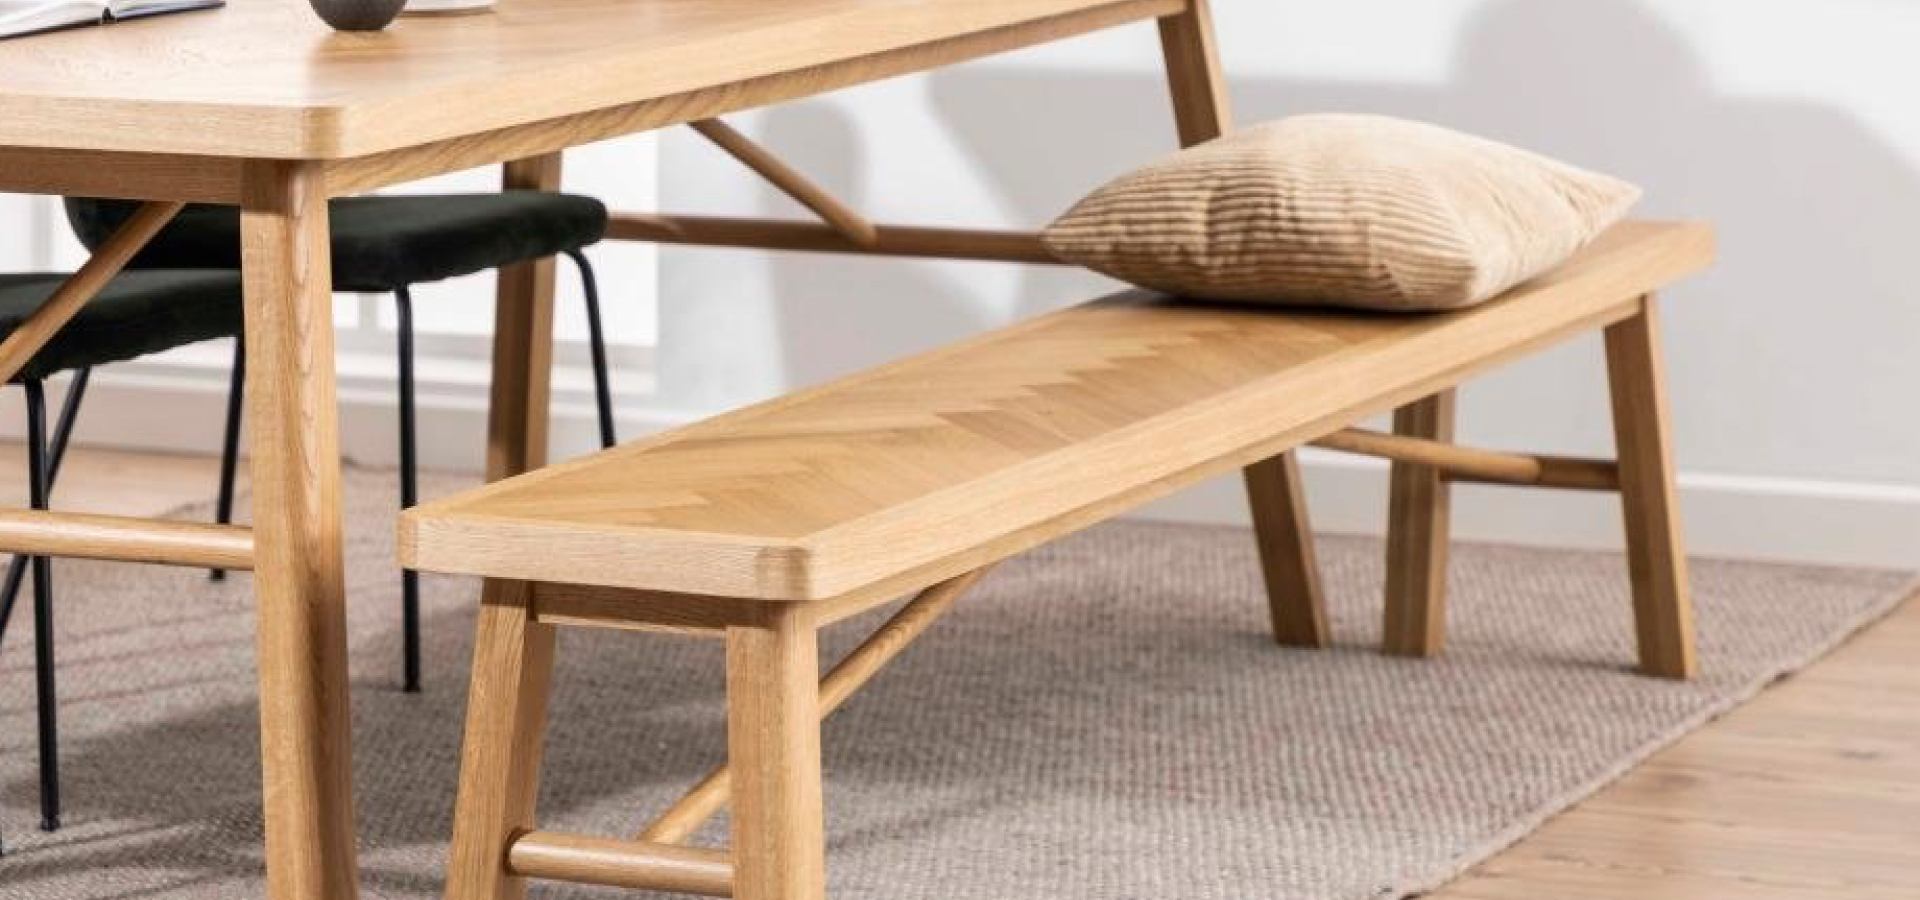 Drewniana ławka stojąca wzdłuż długiego boku drewnianego stołu. Na ławce beżowa poduszka w drobne paski.